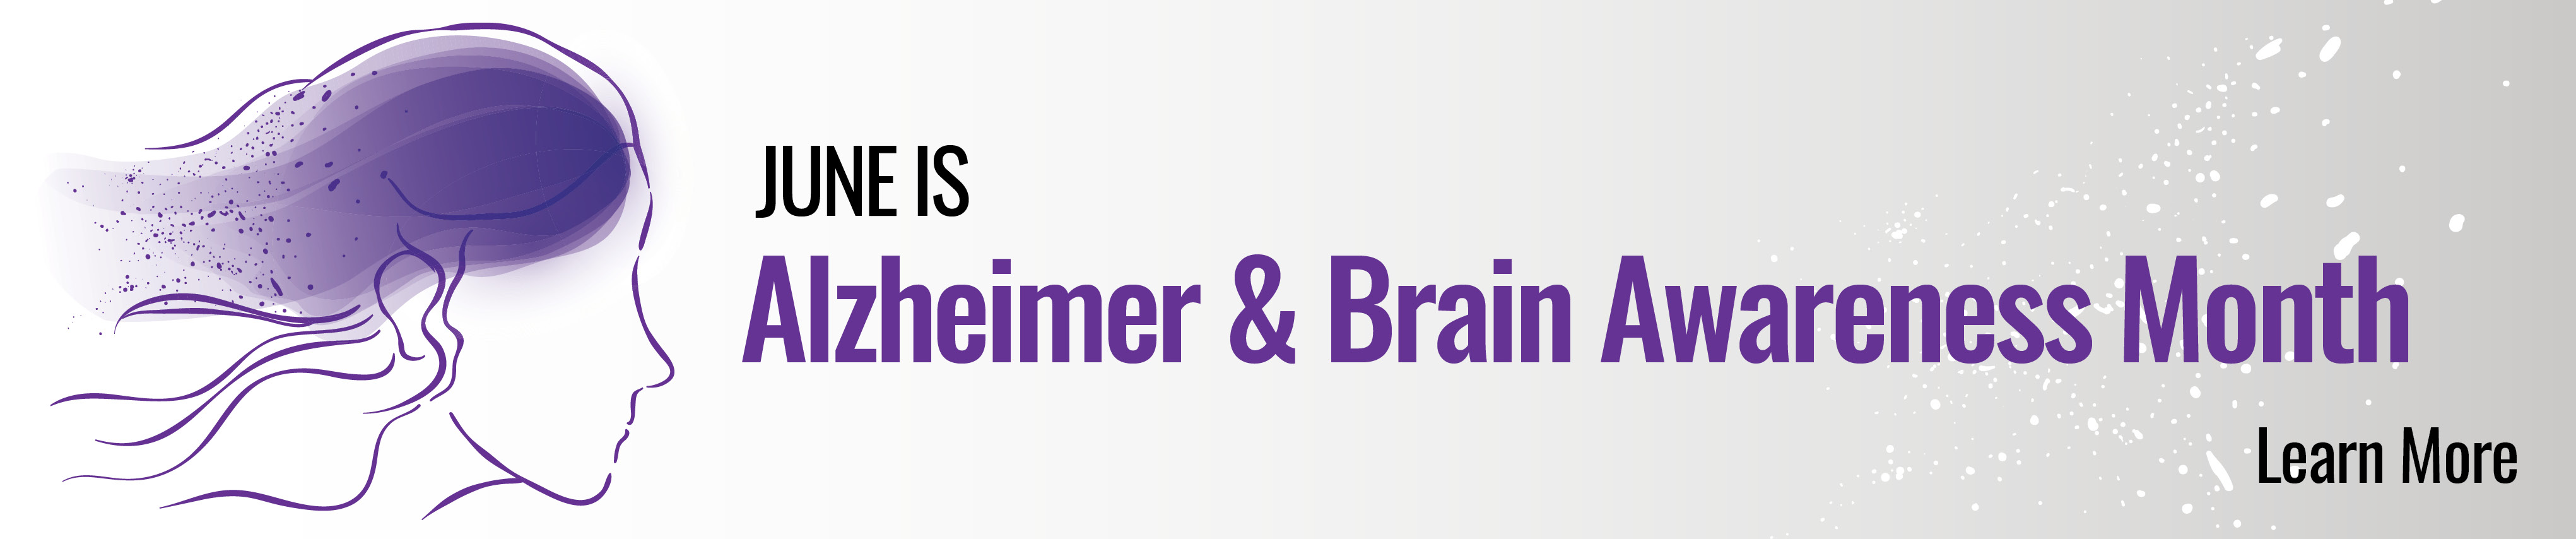 June is Alzheimer & Brain Awareness Month